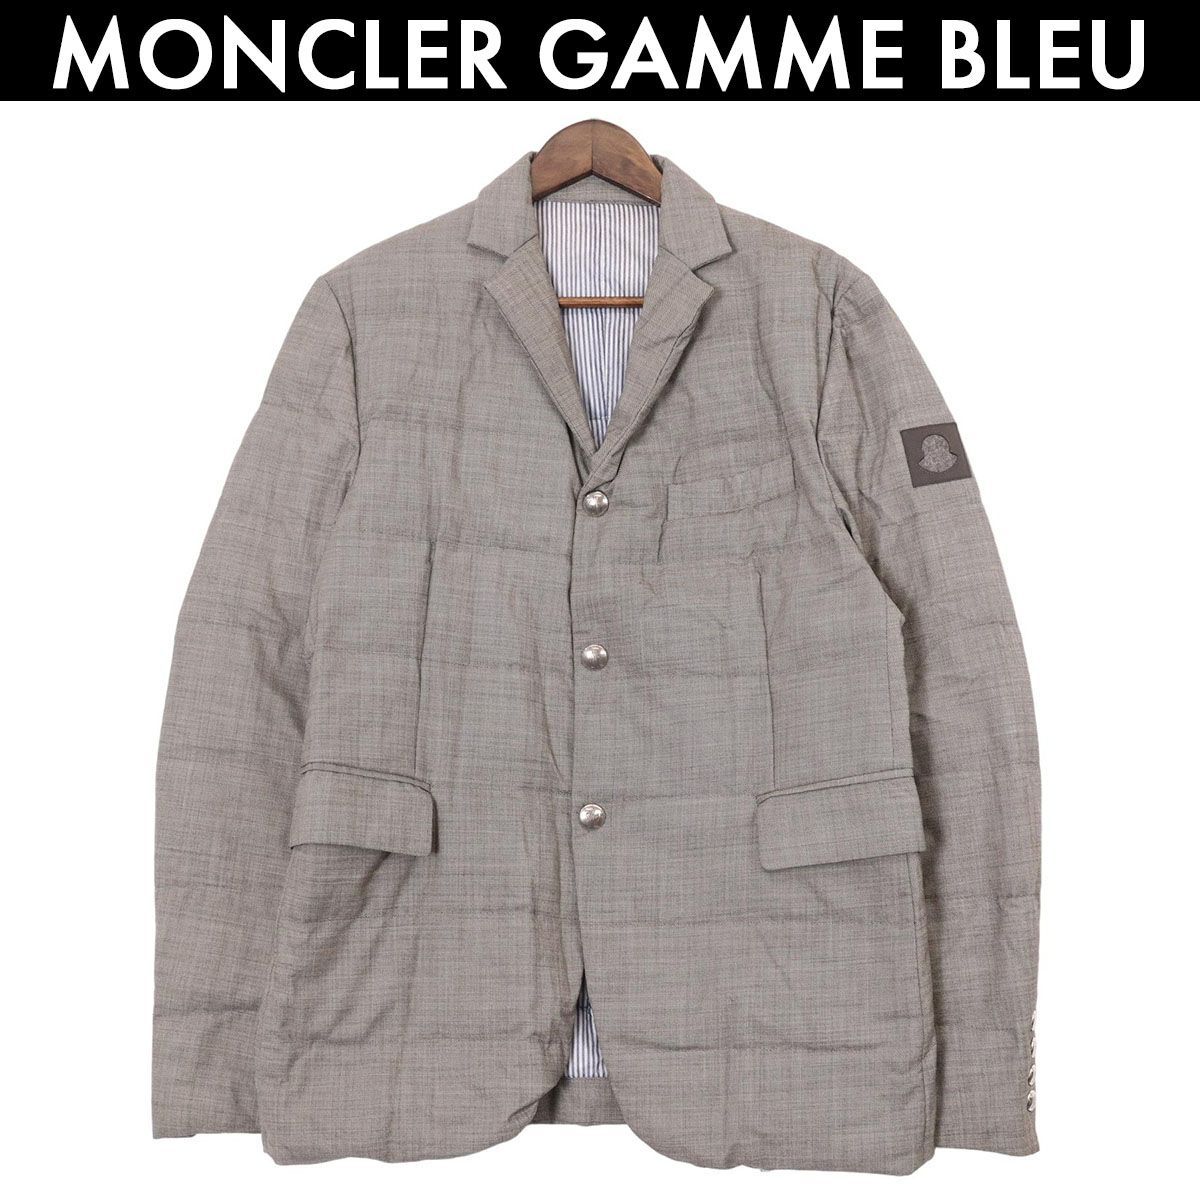 moncler Gamme bleu giacca テーラージャケット